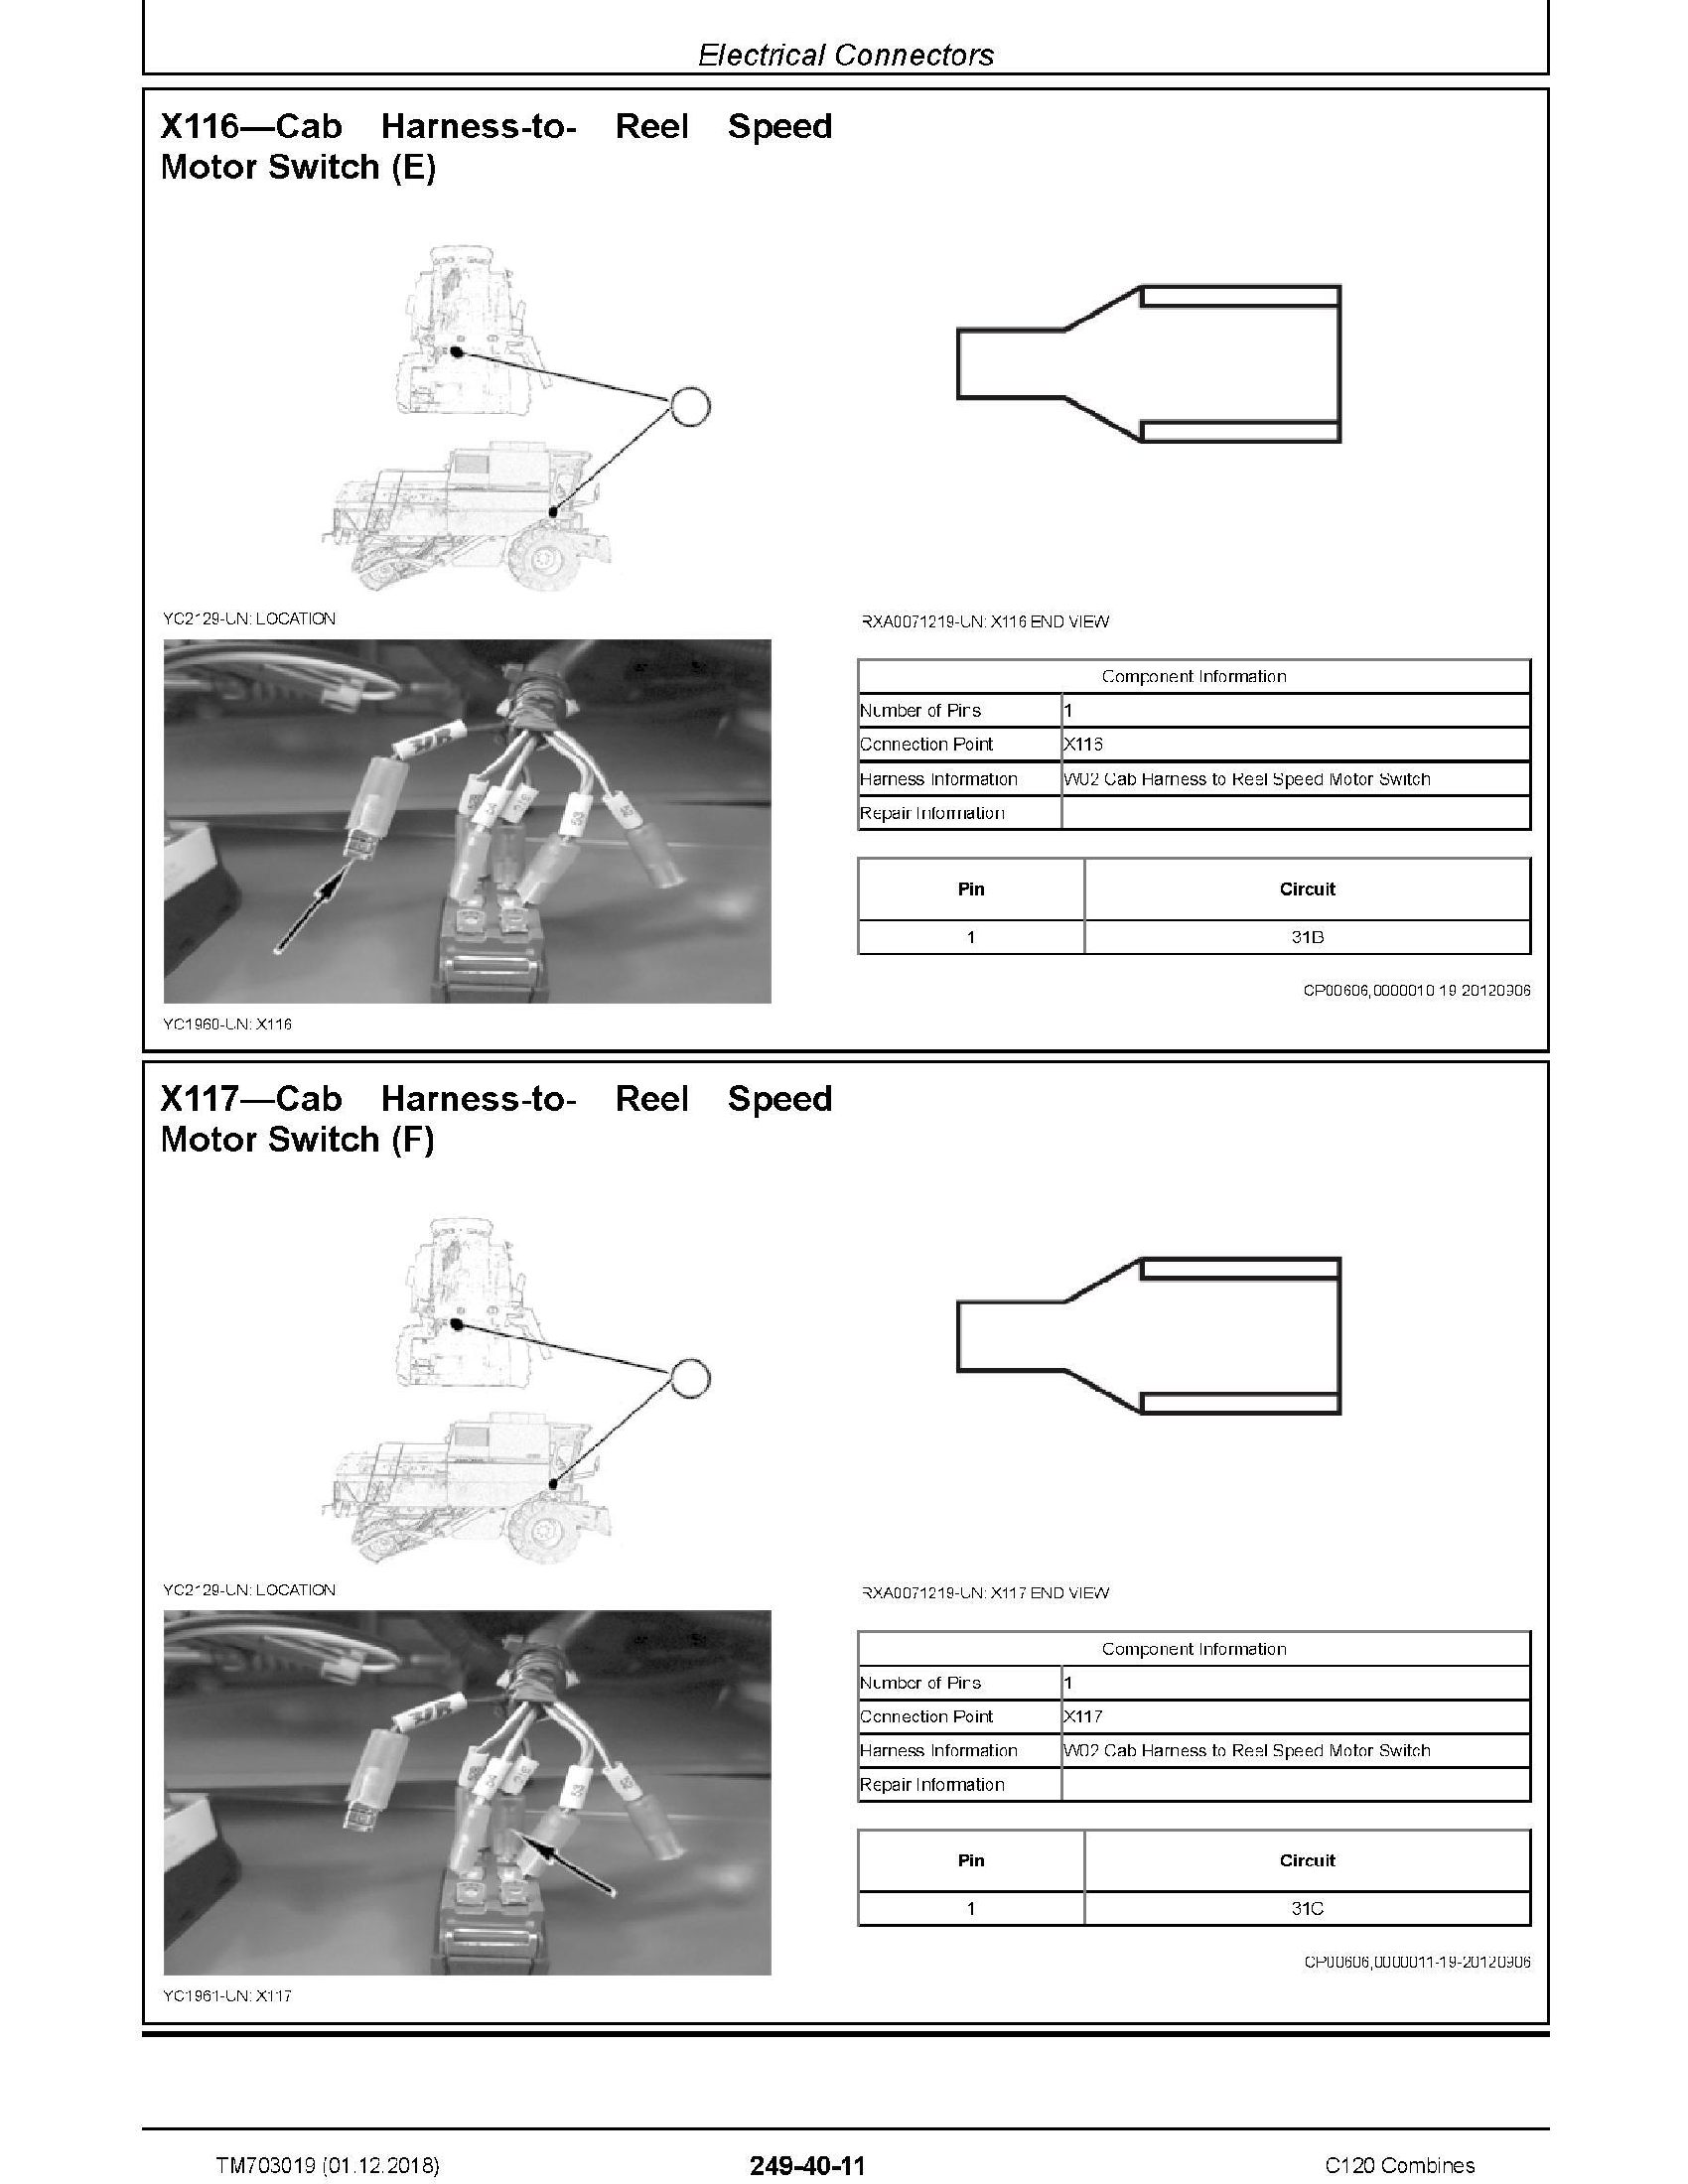 John Deere C120 manual pdf